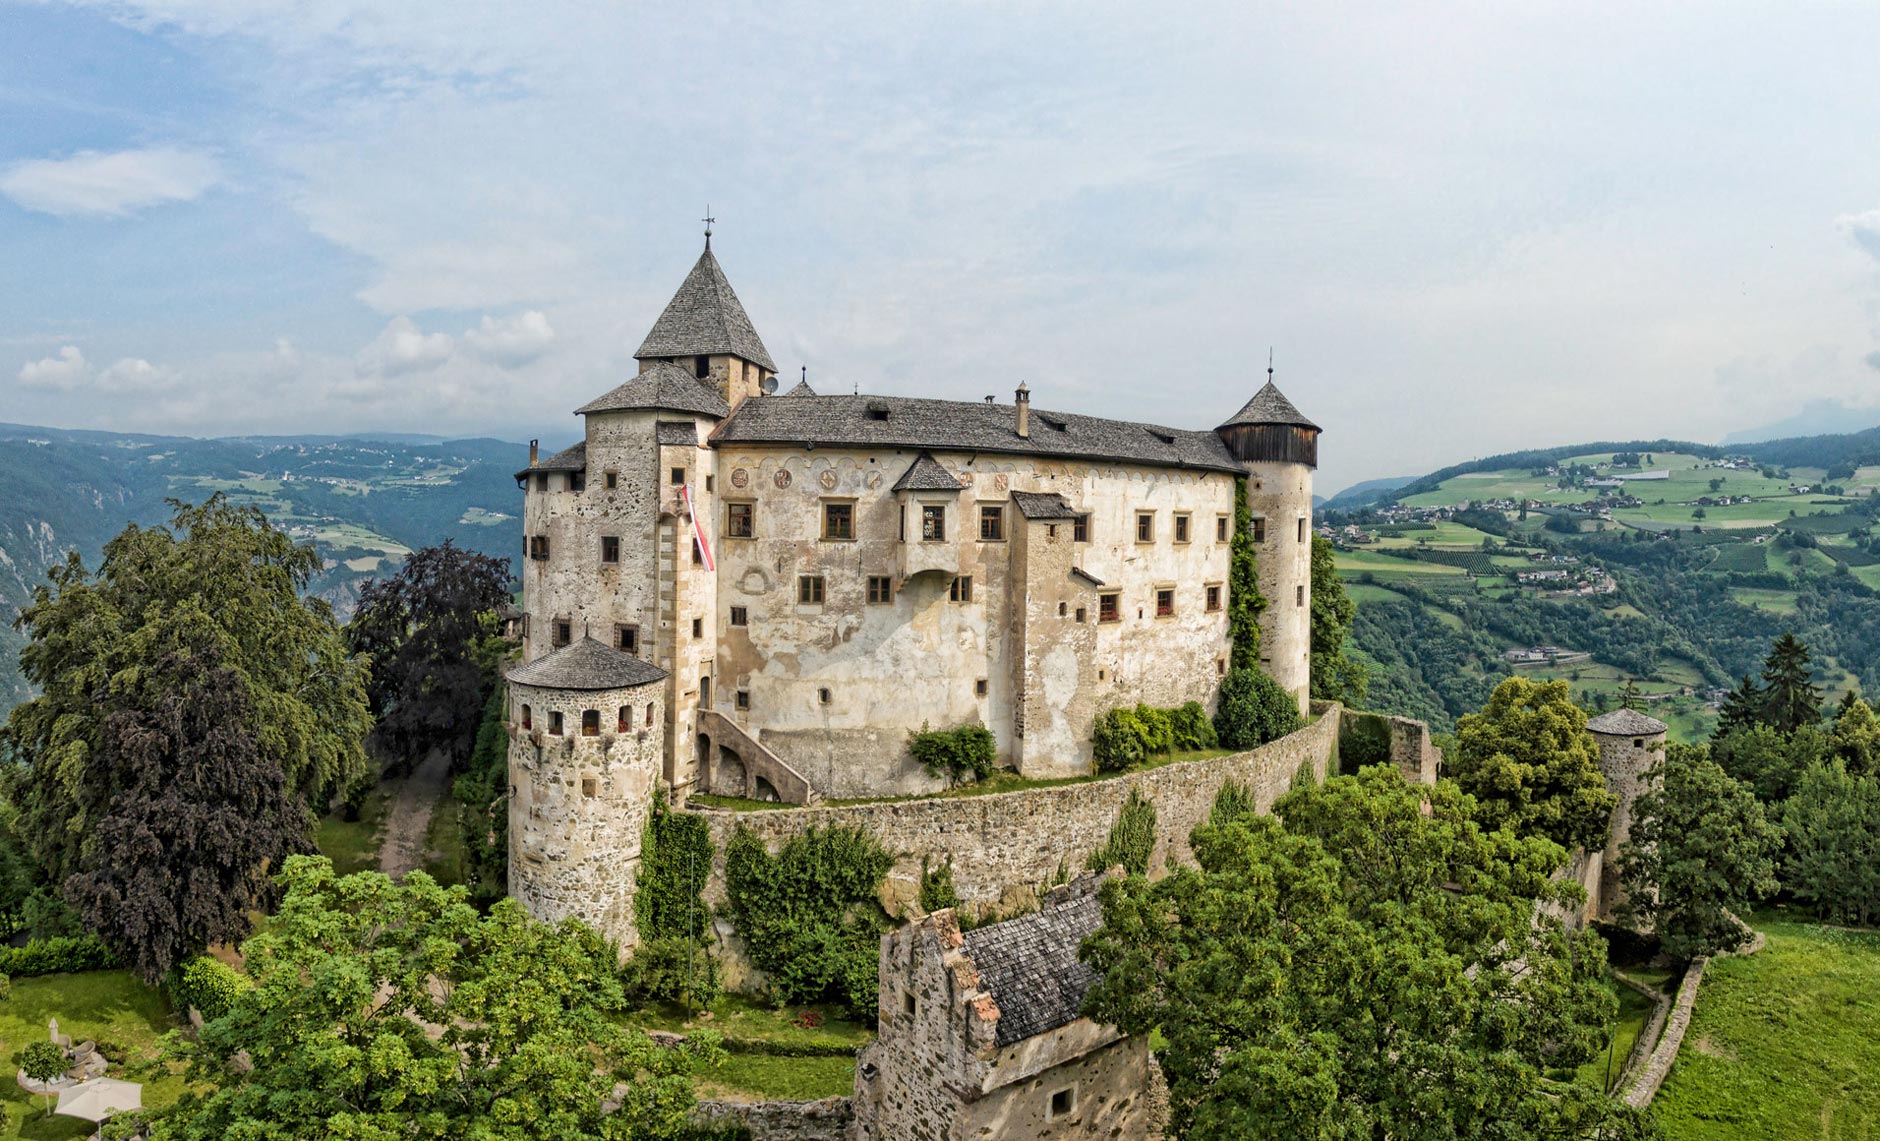 Alpe di Siusi / Seiser Alm: Castel Presule located in Fiè allo Sciliar